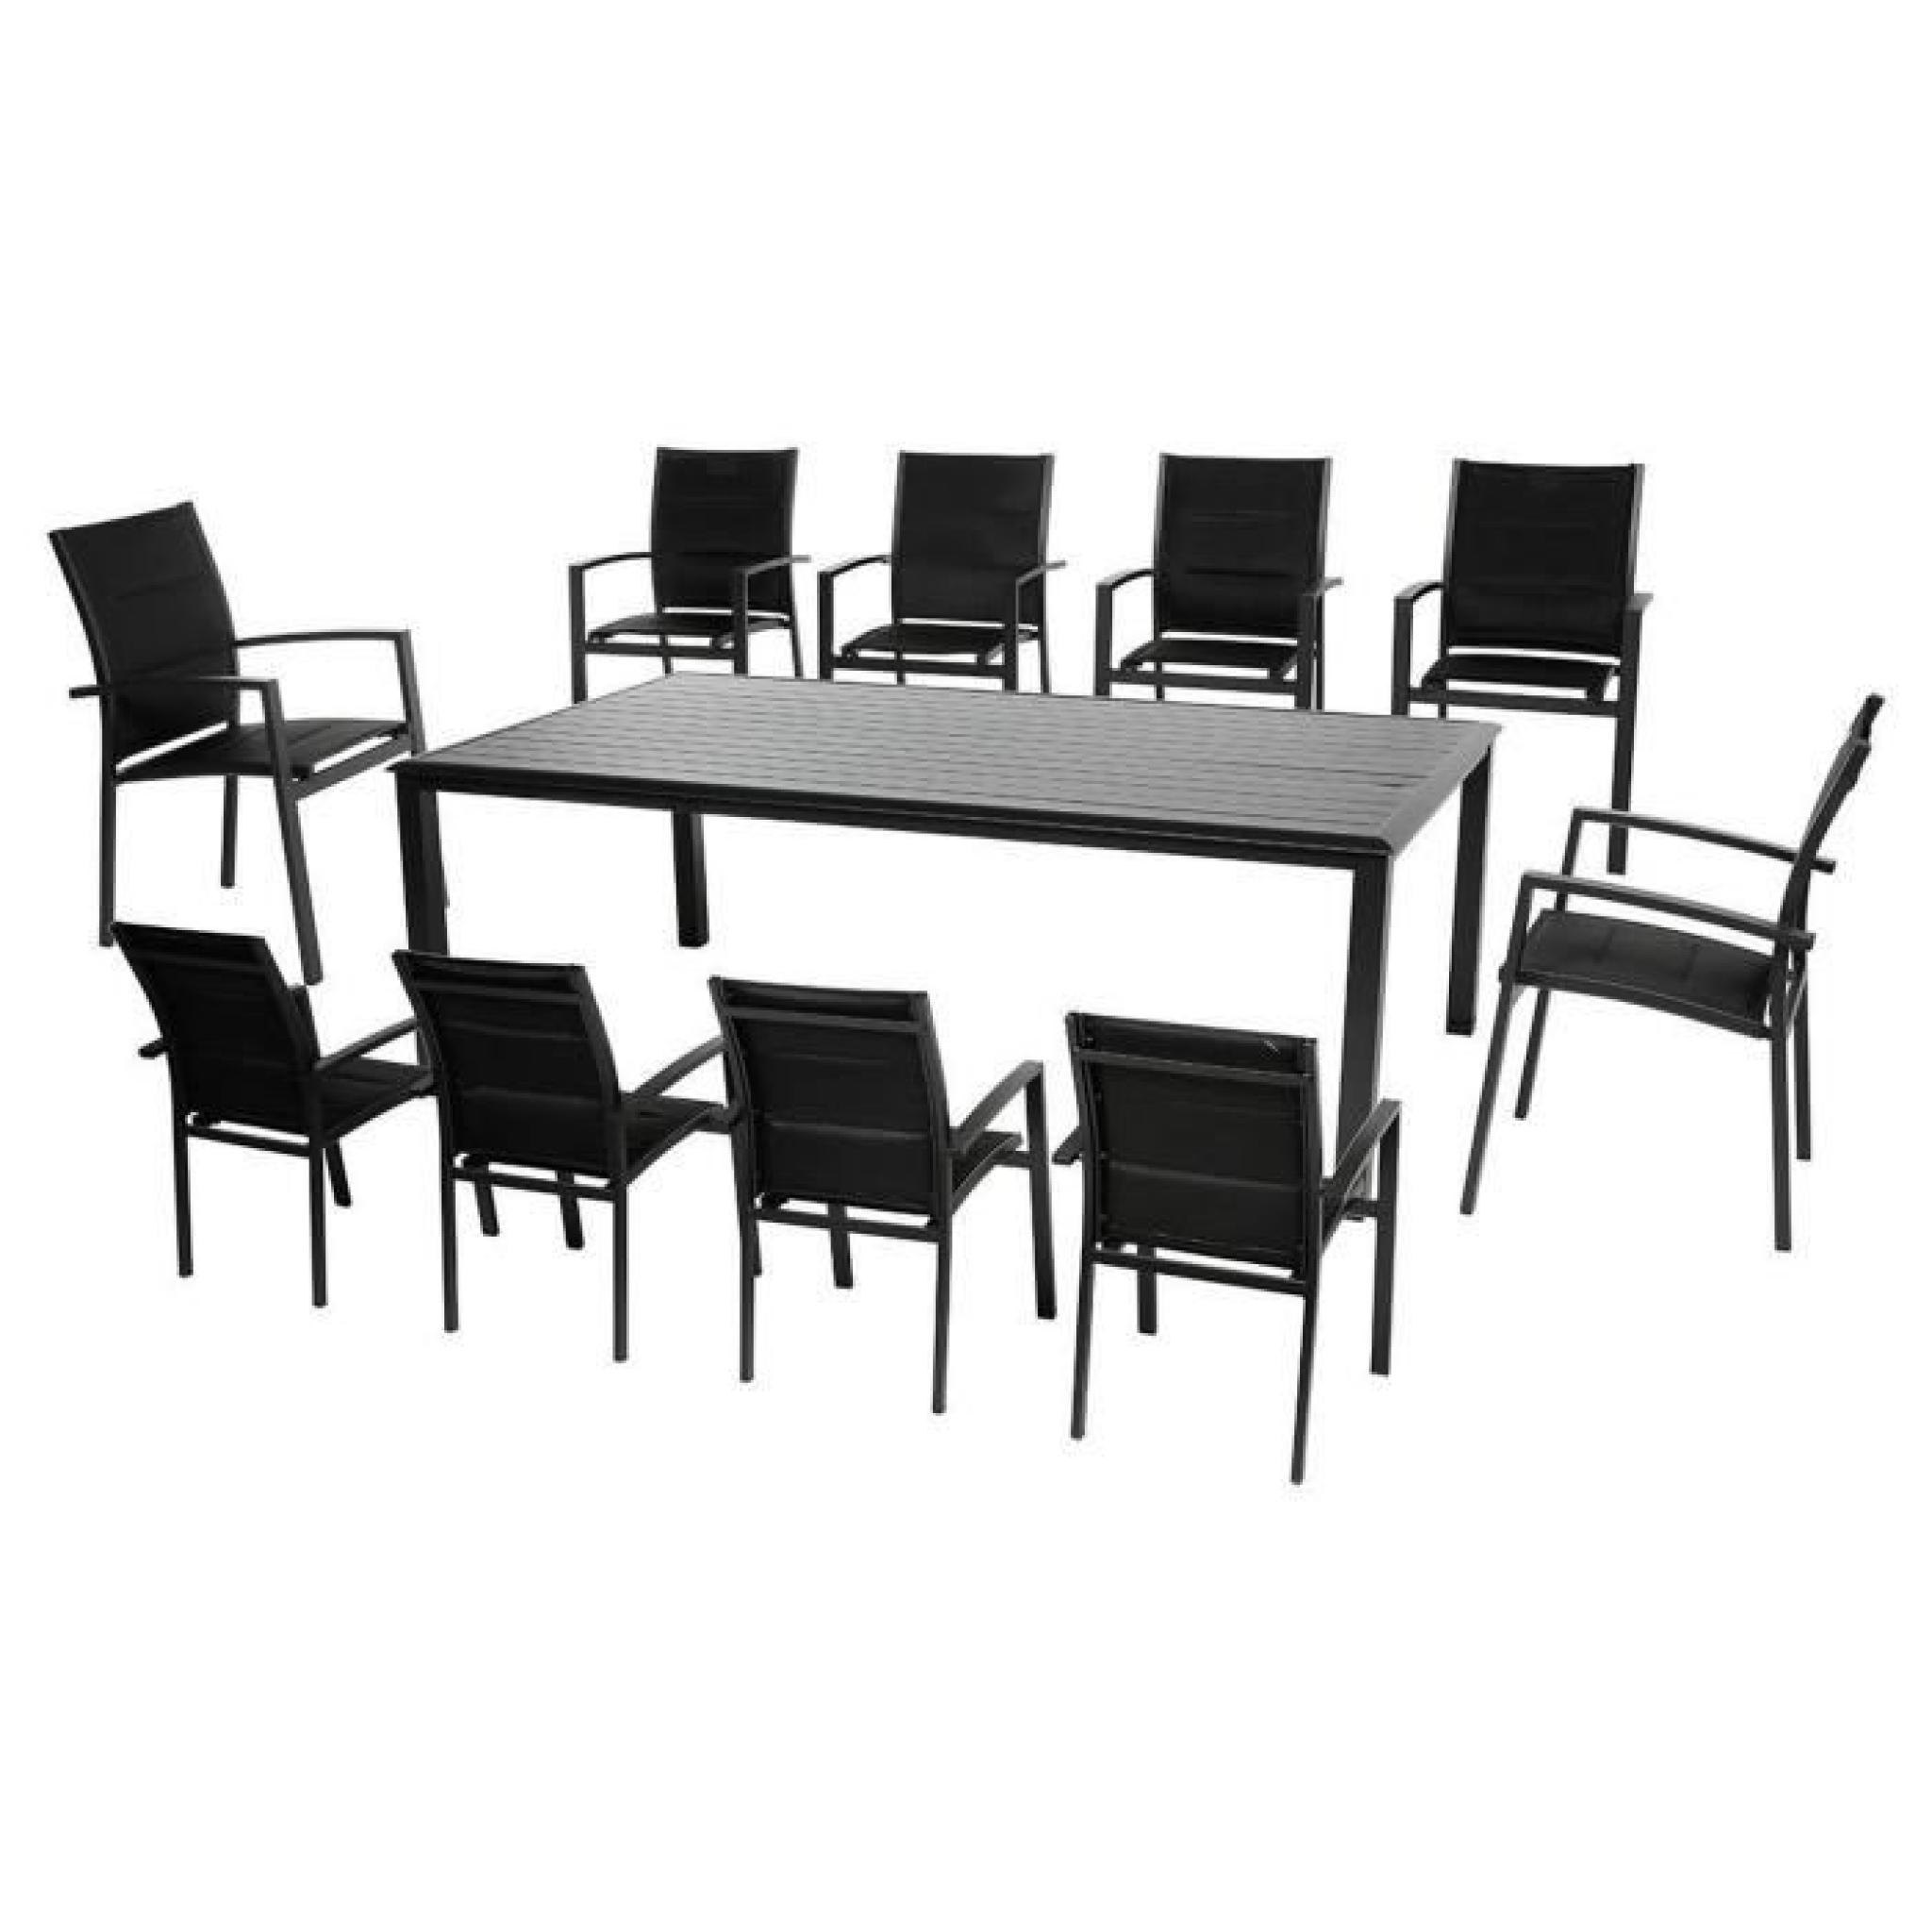 Table rectangulaire en Aluminium coloris noir - Dim : L 218 x P 118 x H 74 cm  pas cher